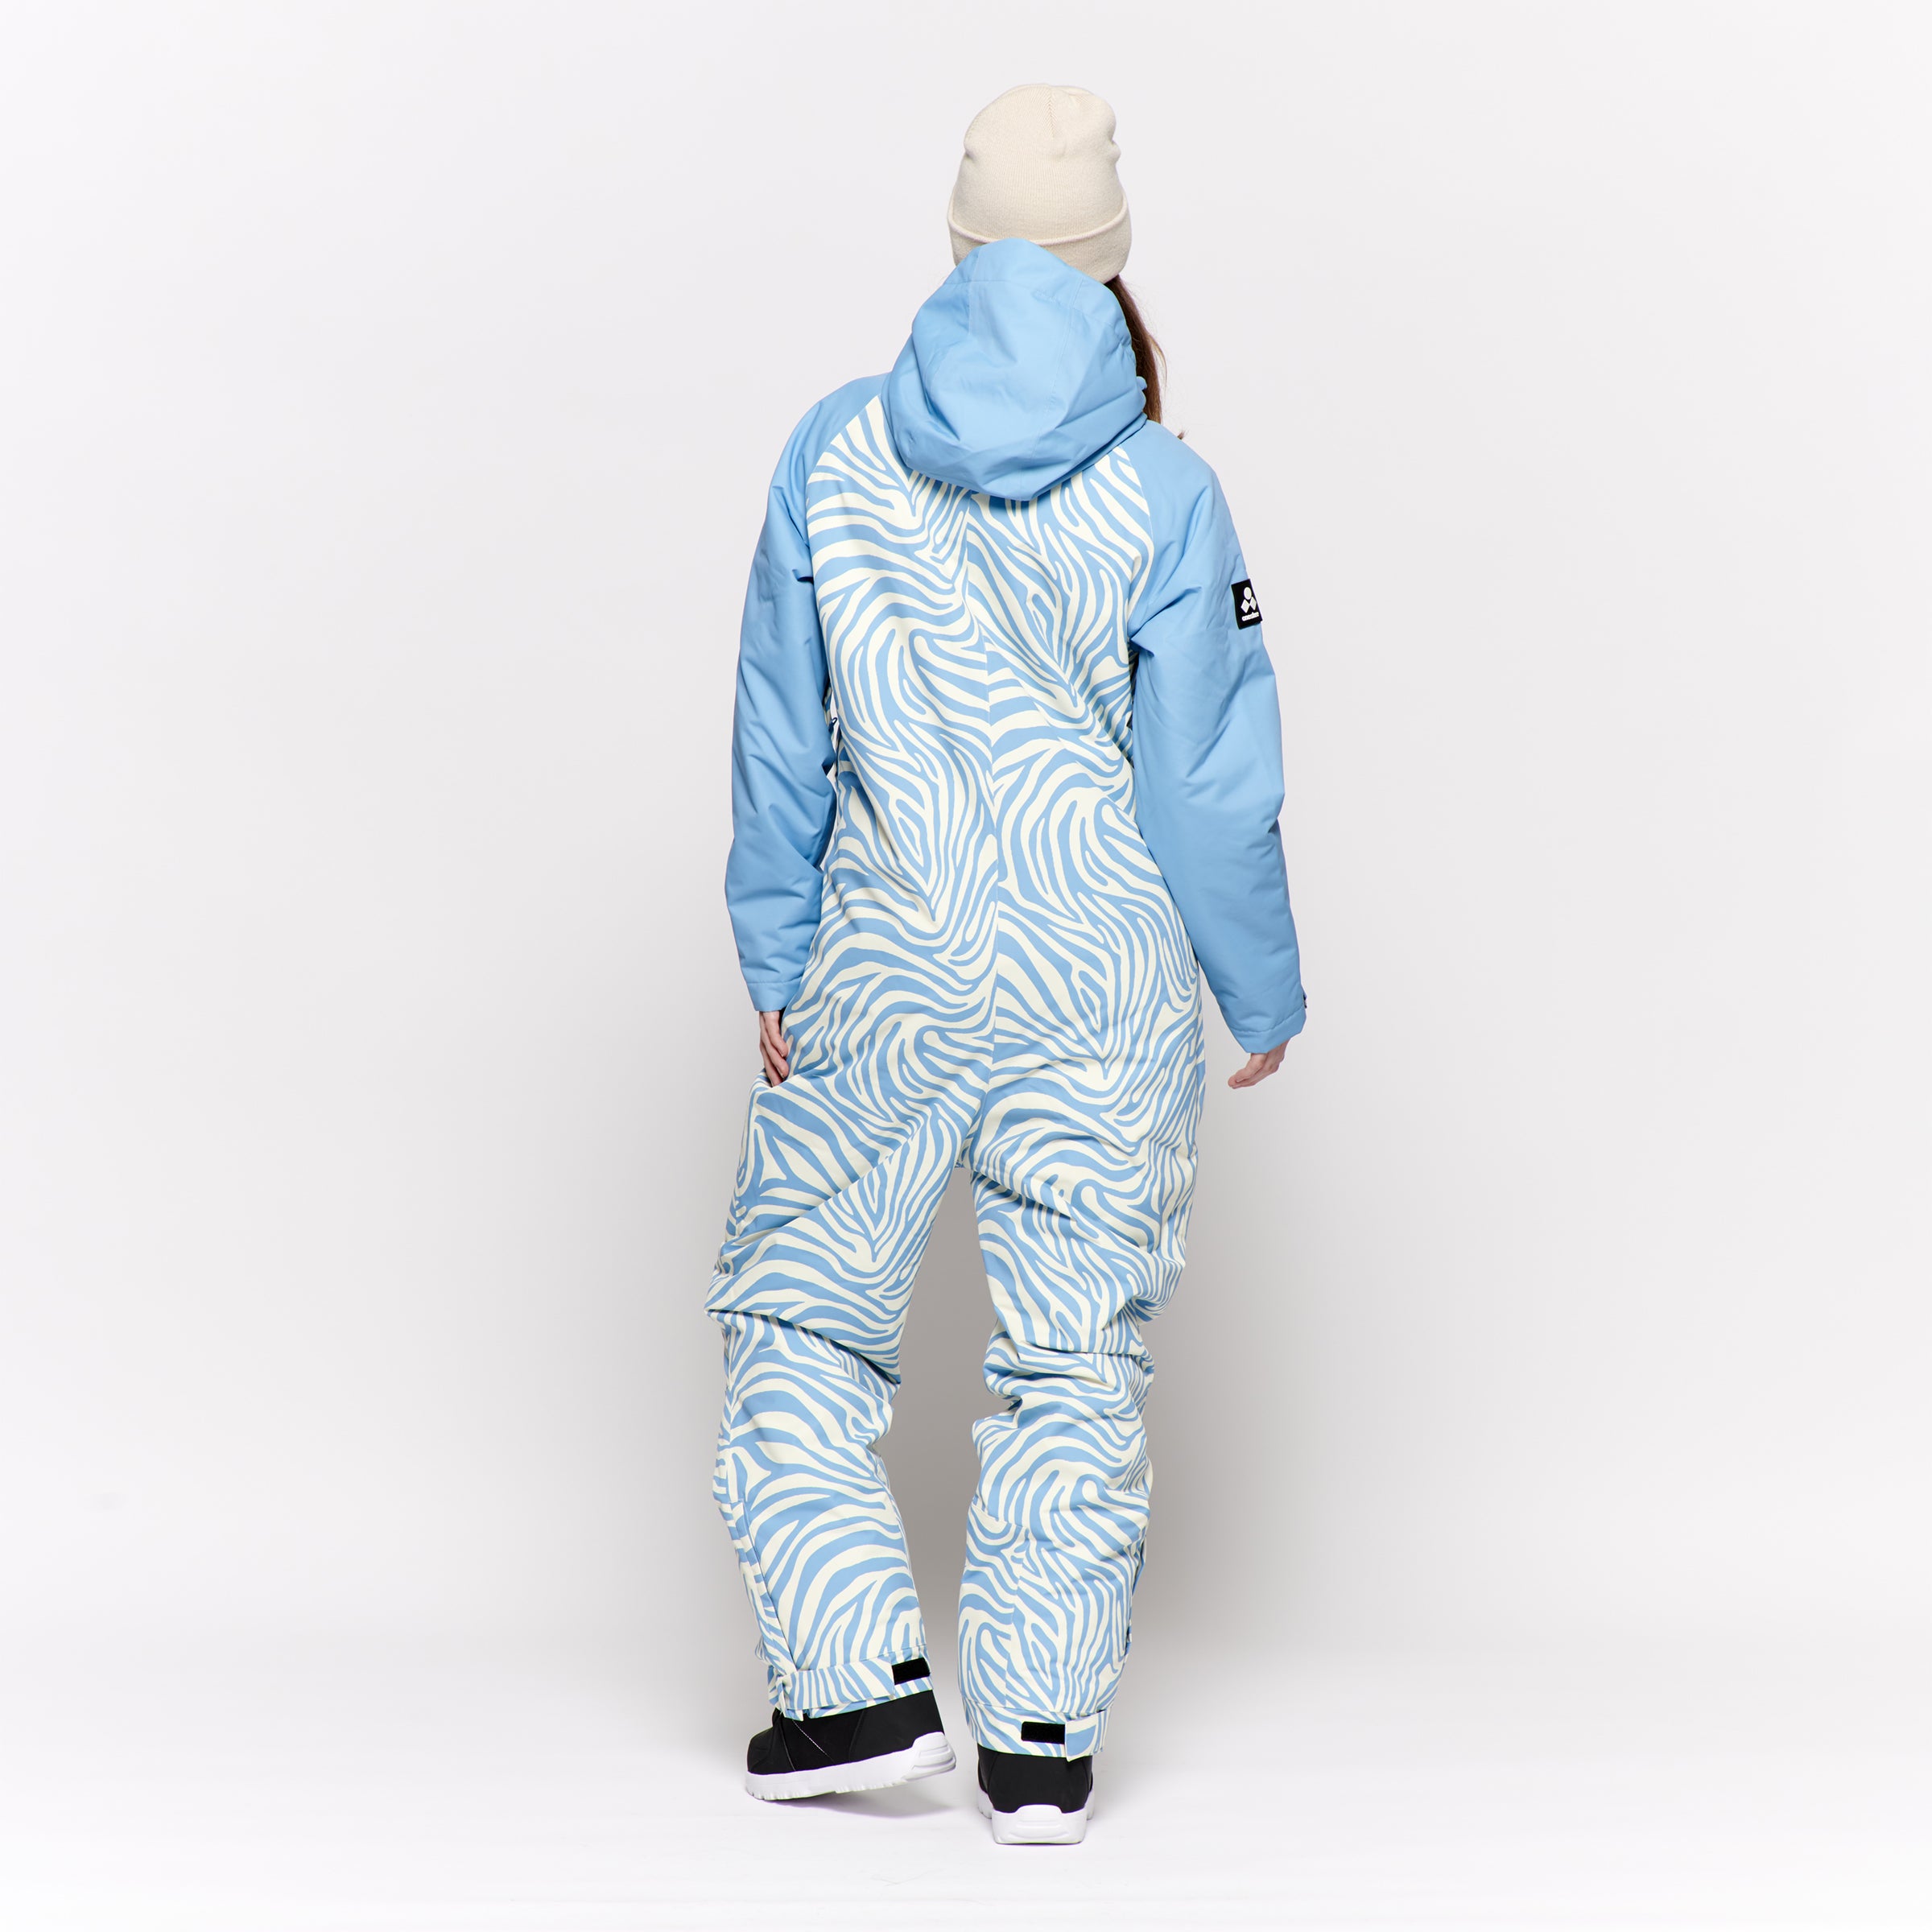 Women's Snow Suit, Blue Zebra